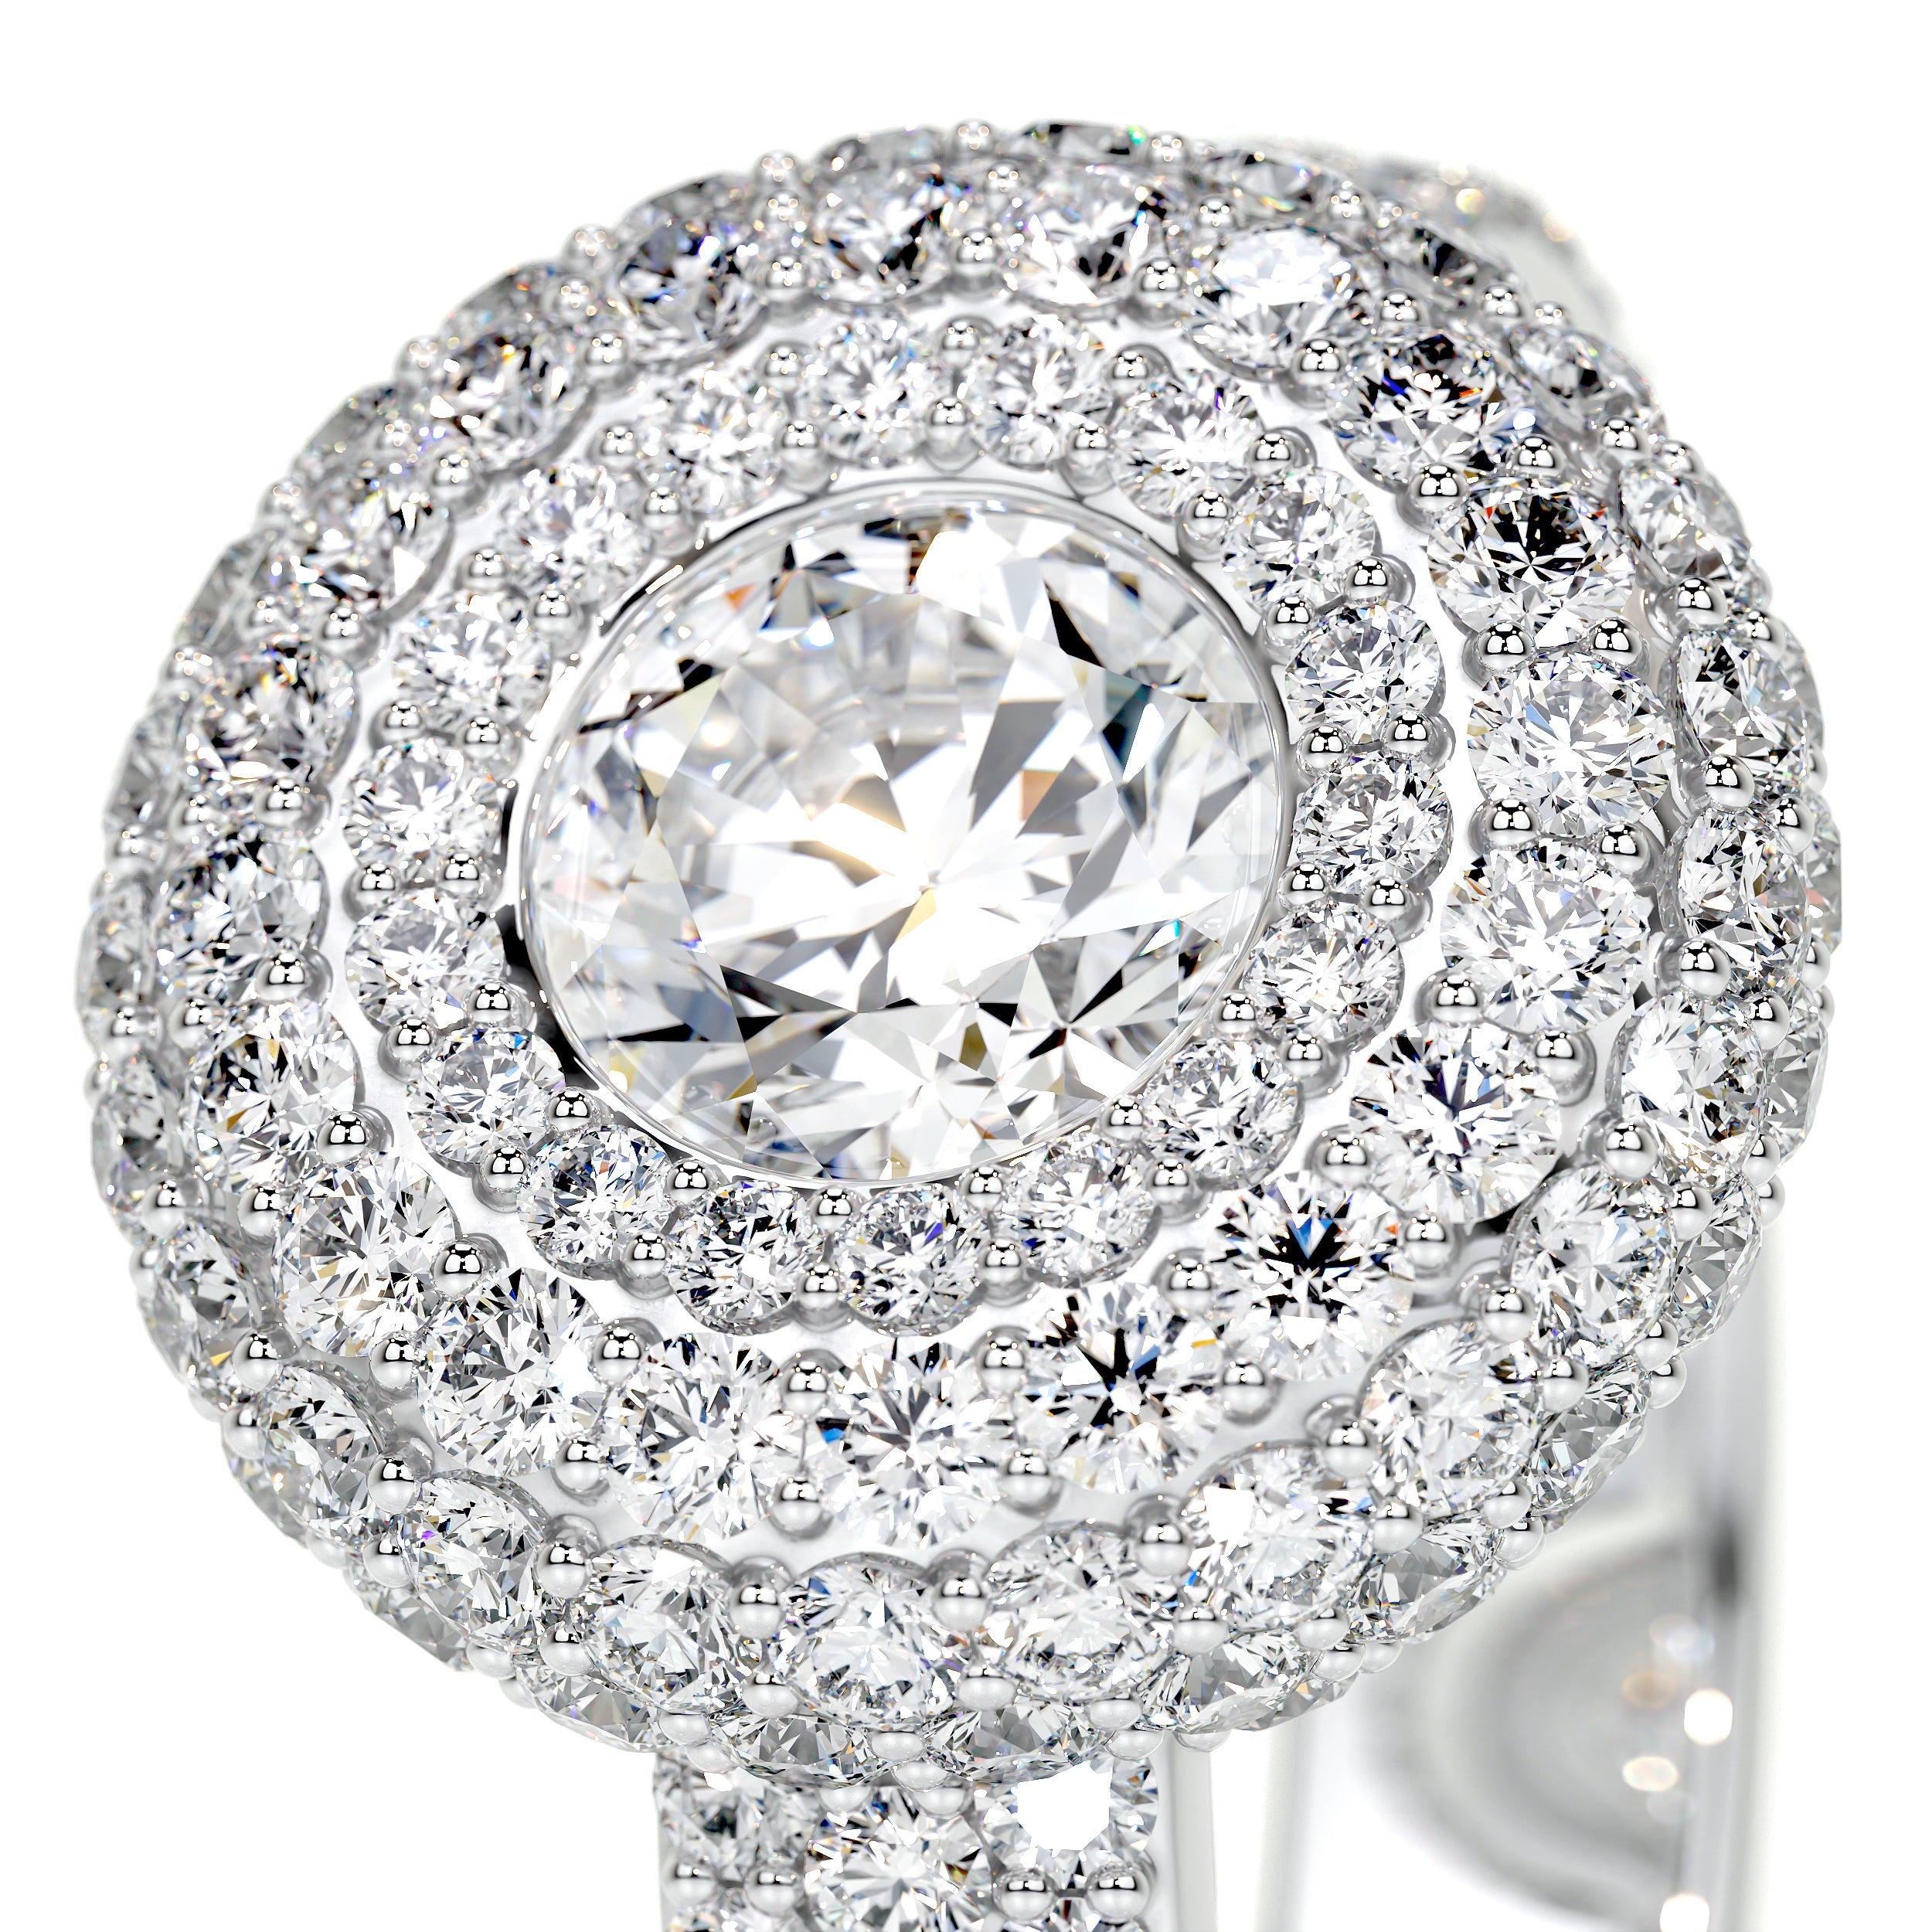 Reagan Lab Grown Diamond Ring   (2.25 Carat) -18K White Gold